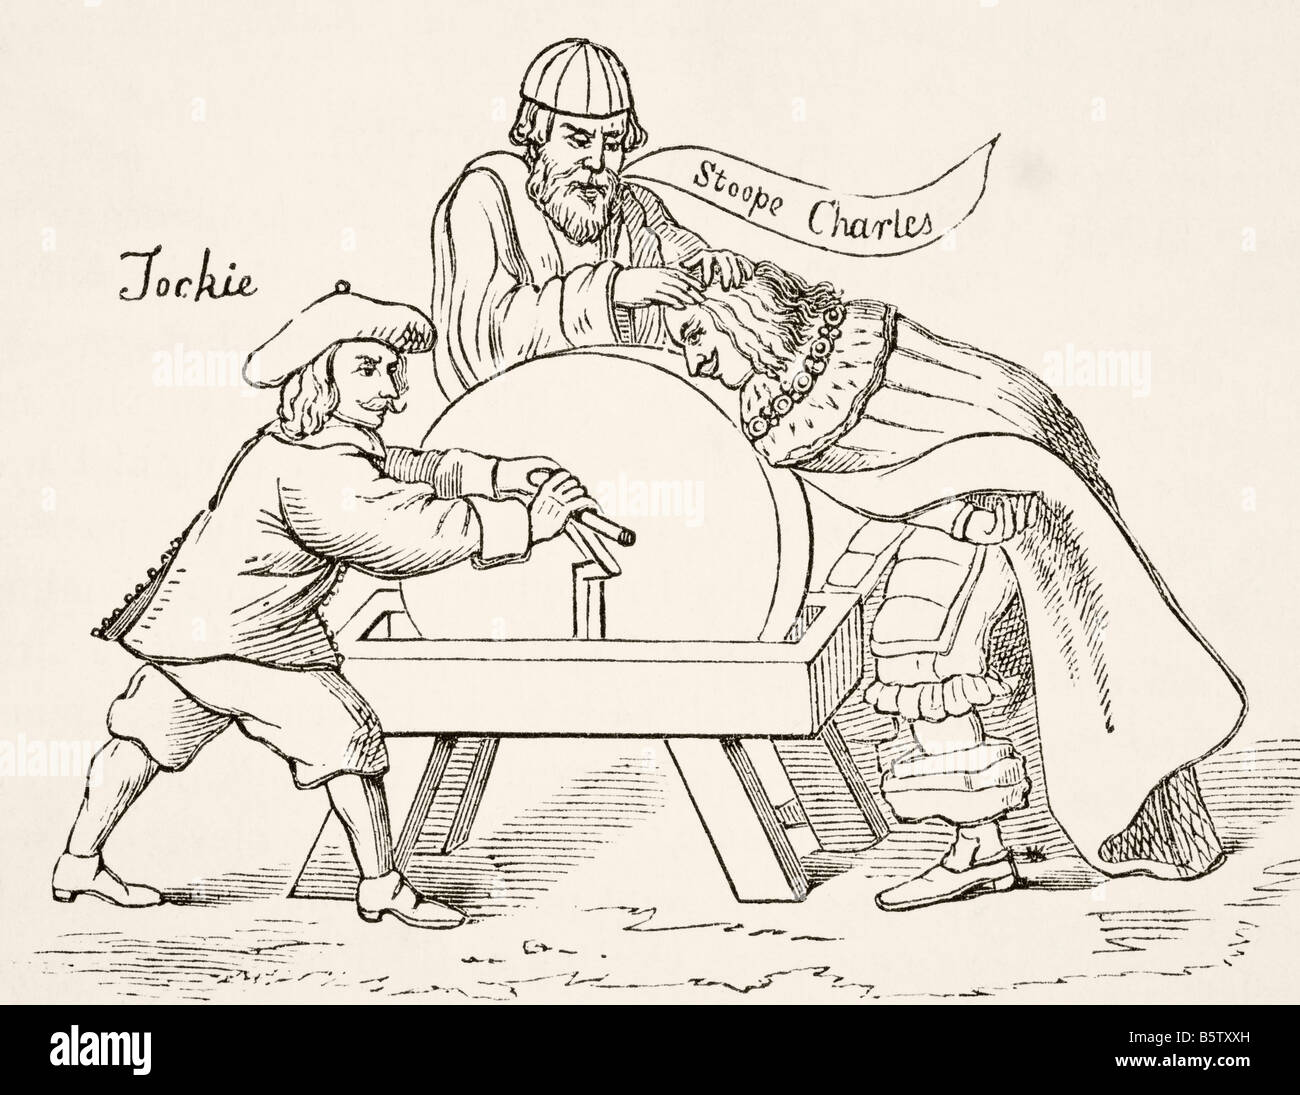 Le roi Charles Ier d'Angleterre sur la pierre angulaire de l'intolérance presbytérienne écossaise. Une caricature de 1651. Banque D'Images